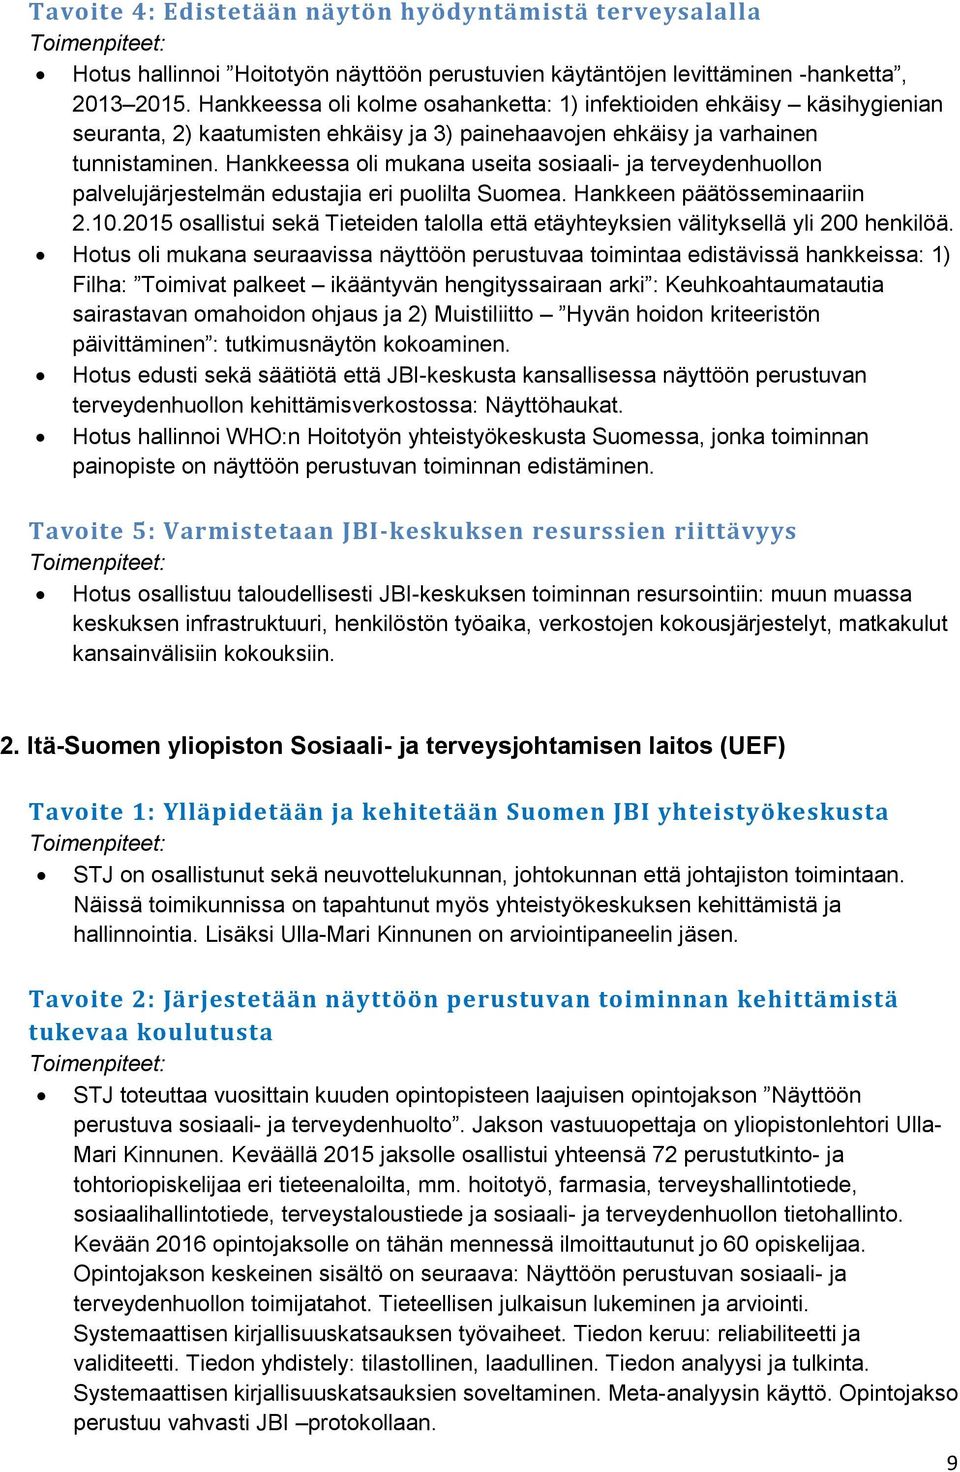 Hankkeessa oli mukana useita sosiaali- ja terveydenhuollon palvelujärjestelmän edustajia eri puolilta Suomea. Hankkeen päätösseminaariin 2.10.